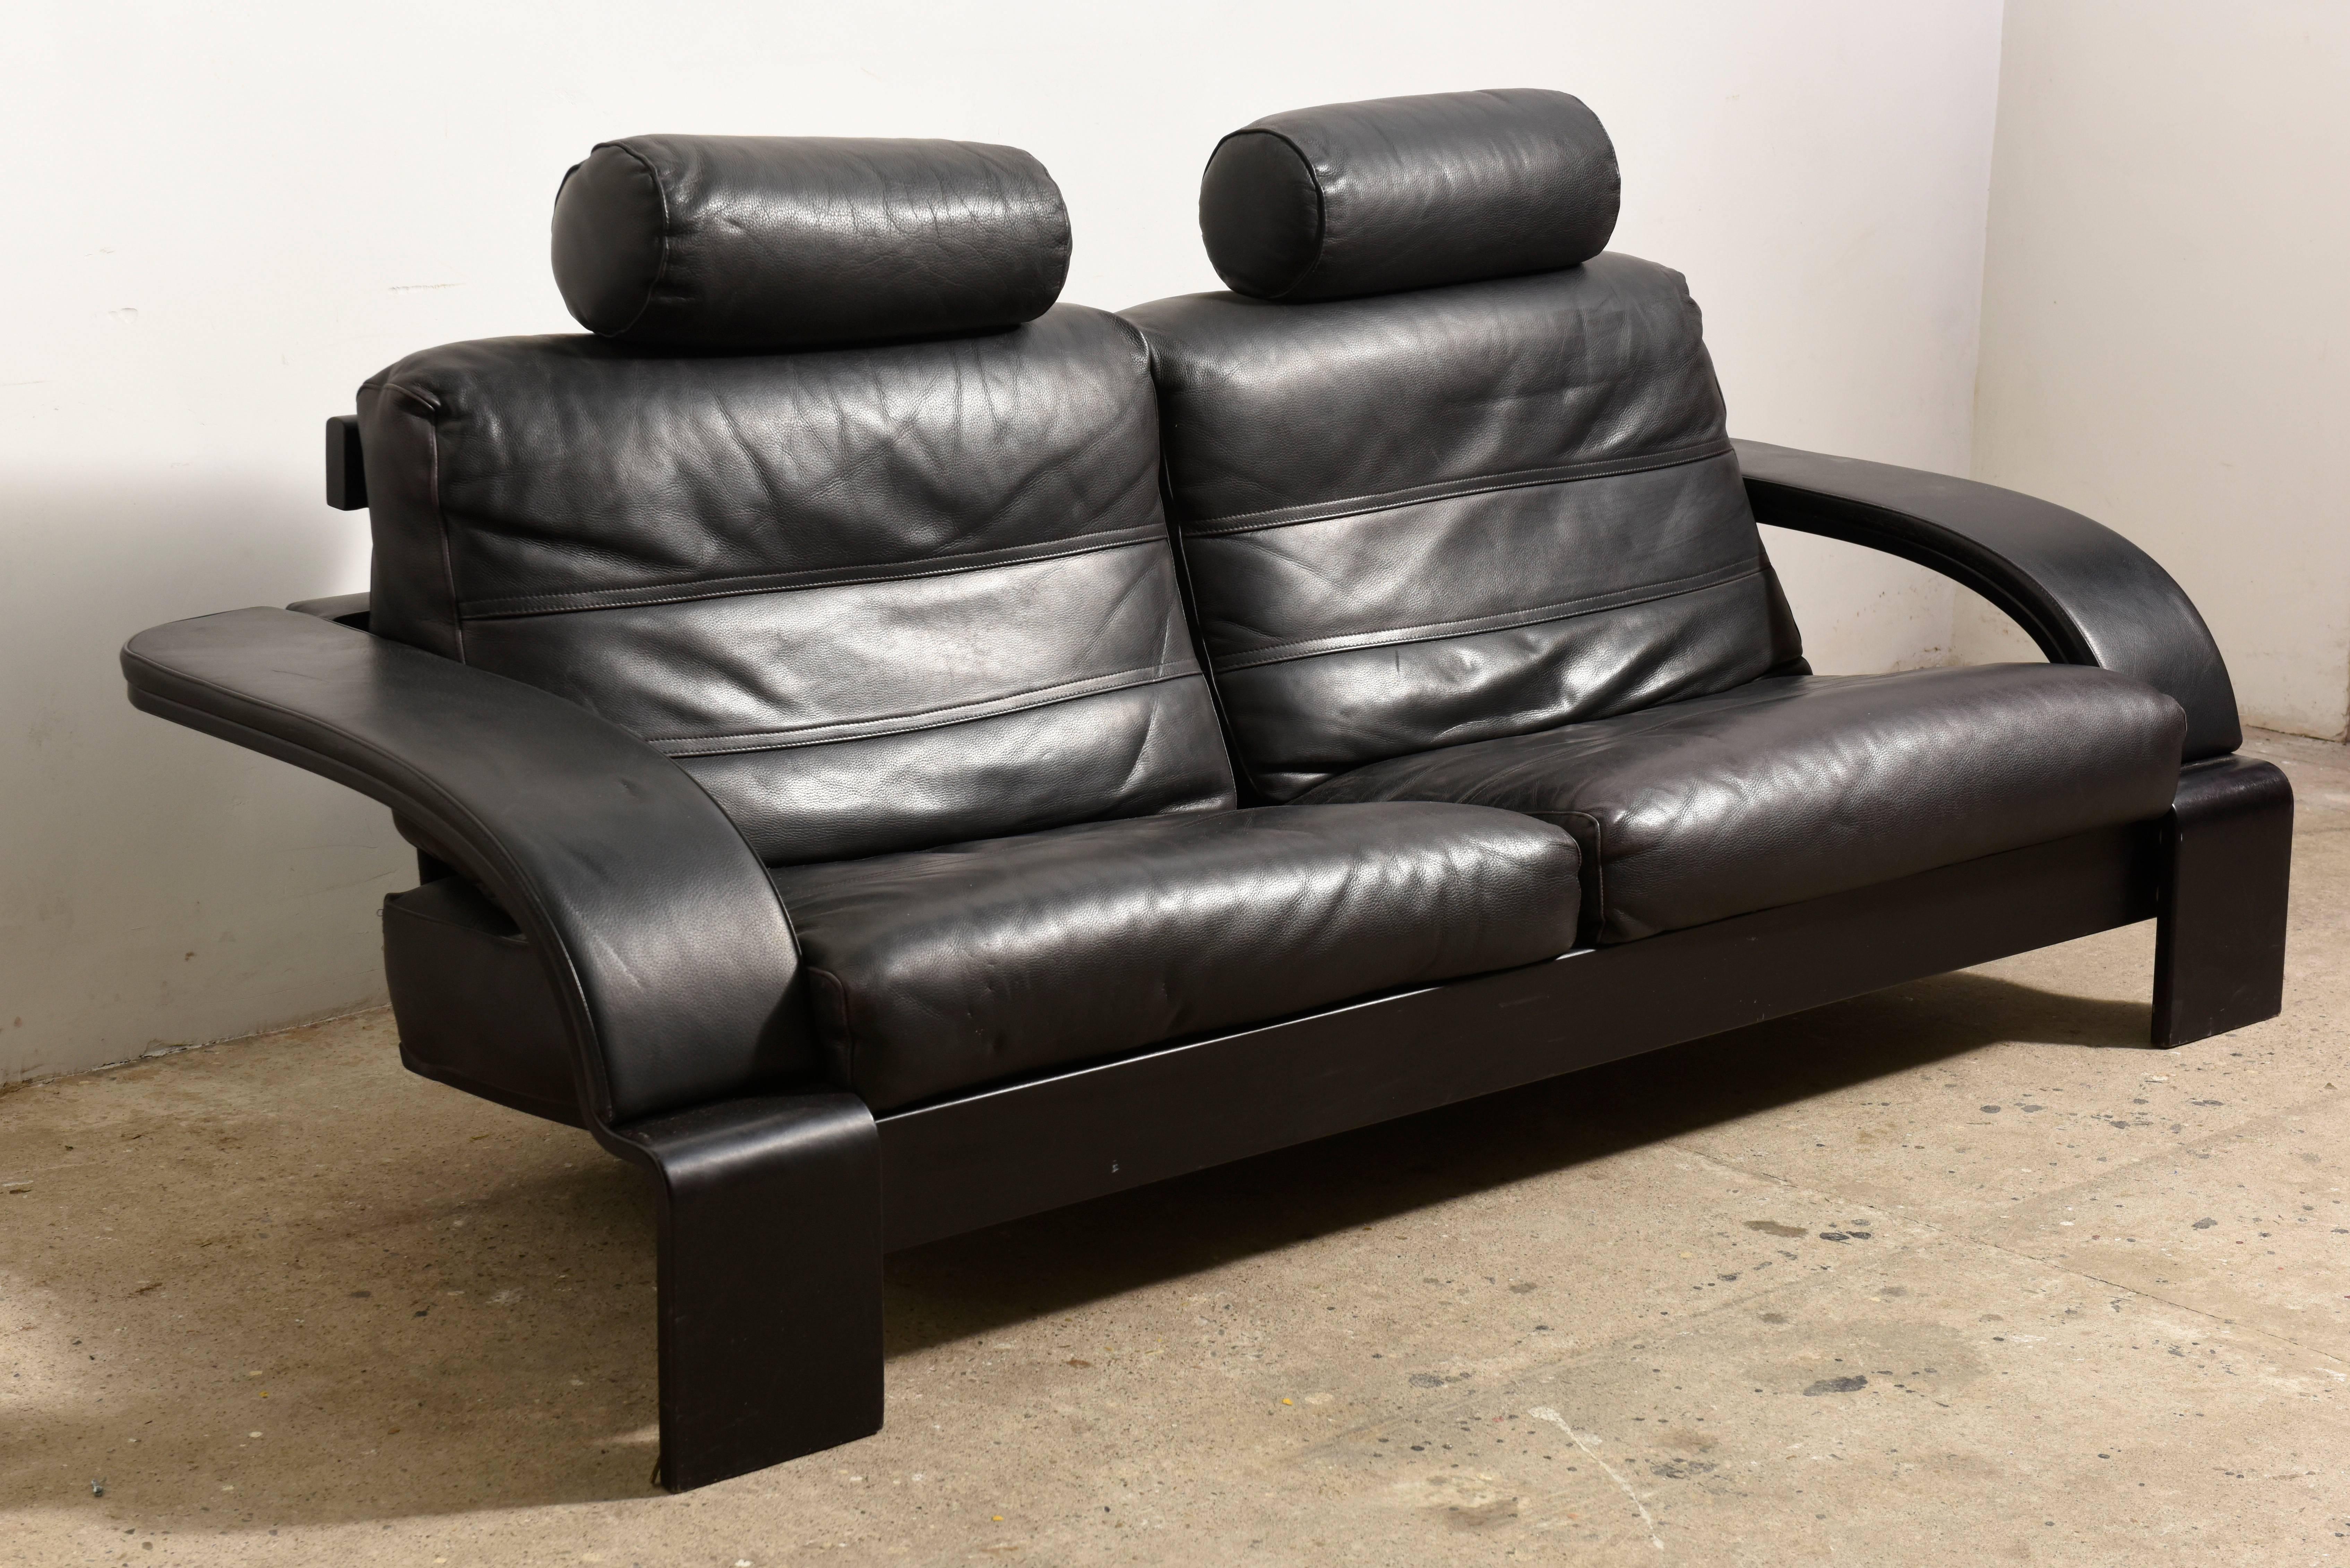 Das Design des Sessels, der Rückenlehne und der Armlehne bilden ein originelles Detail im Liniendesign, das schlanke, geschwungene Design und die Offenheit unter dem Sessel vervollständigen die moderne und beeindruckende dekorative Wirkung dieses